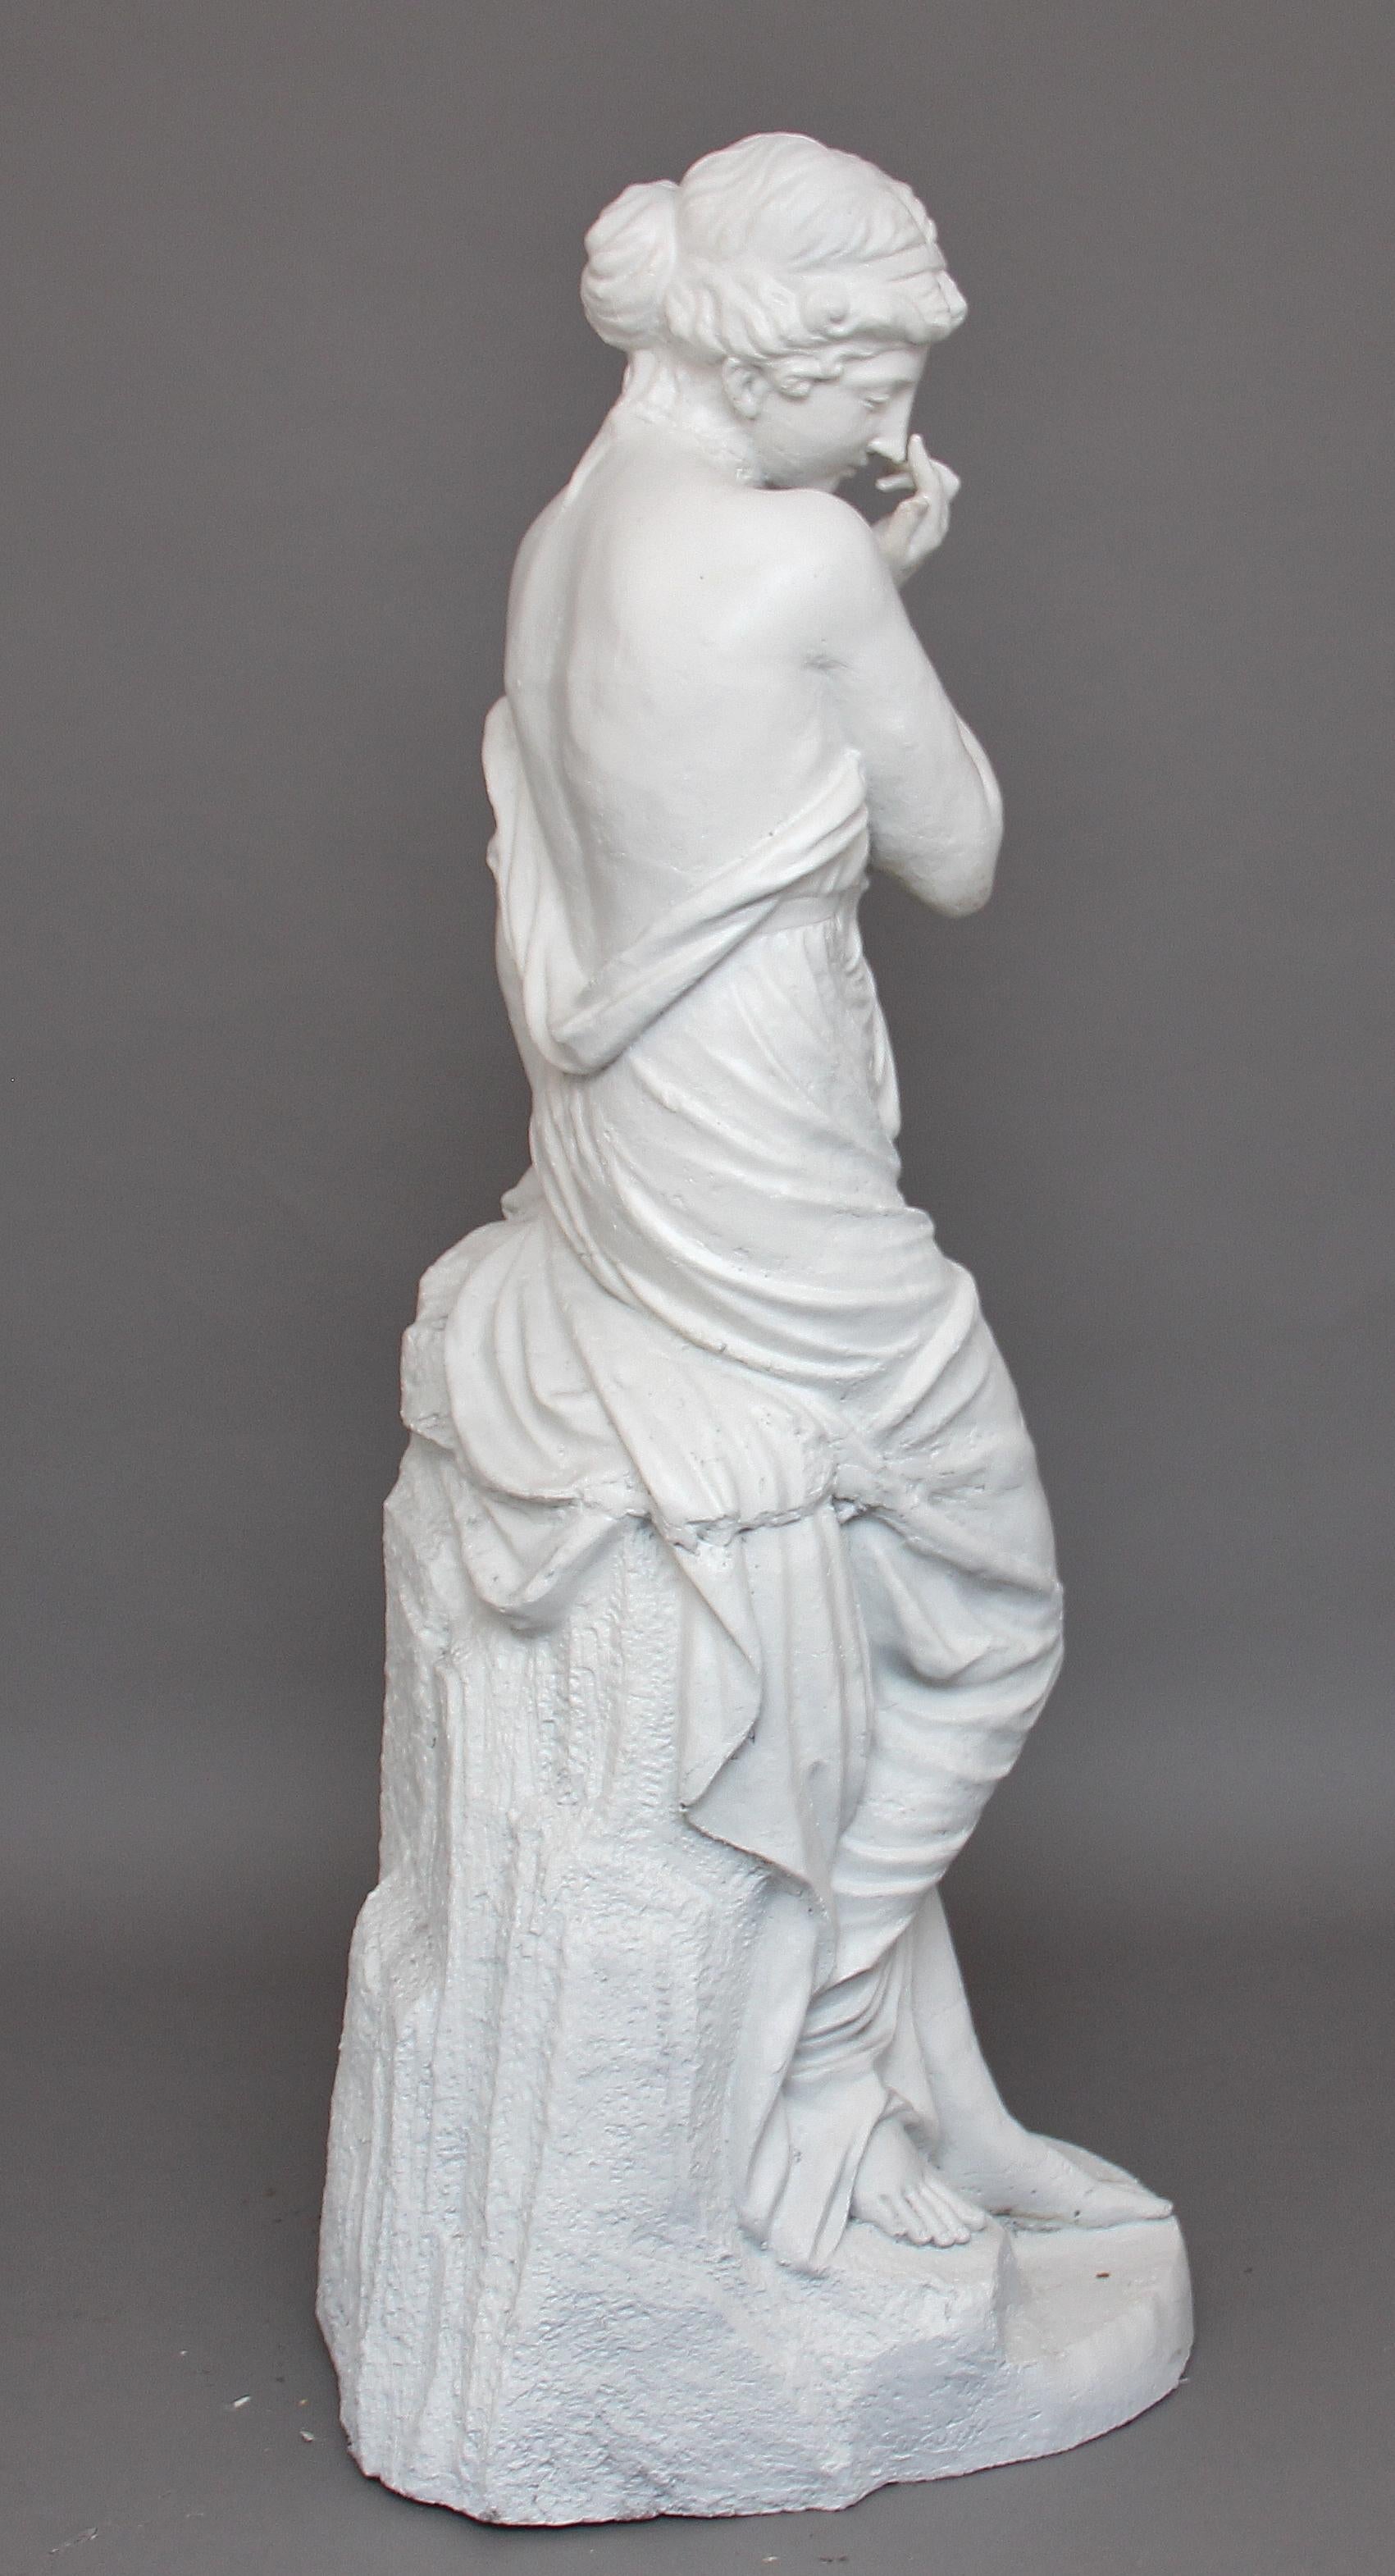 Statue en fonte grandeur nature du milieu du XIXe siècle représentant une jolie jeune fille semi-habillée portant un costume grec classique, debout au-dessus d'une cruche cassée et appuyée sur un mur, vers 1860.
 